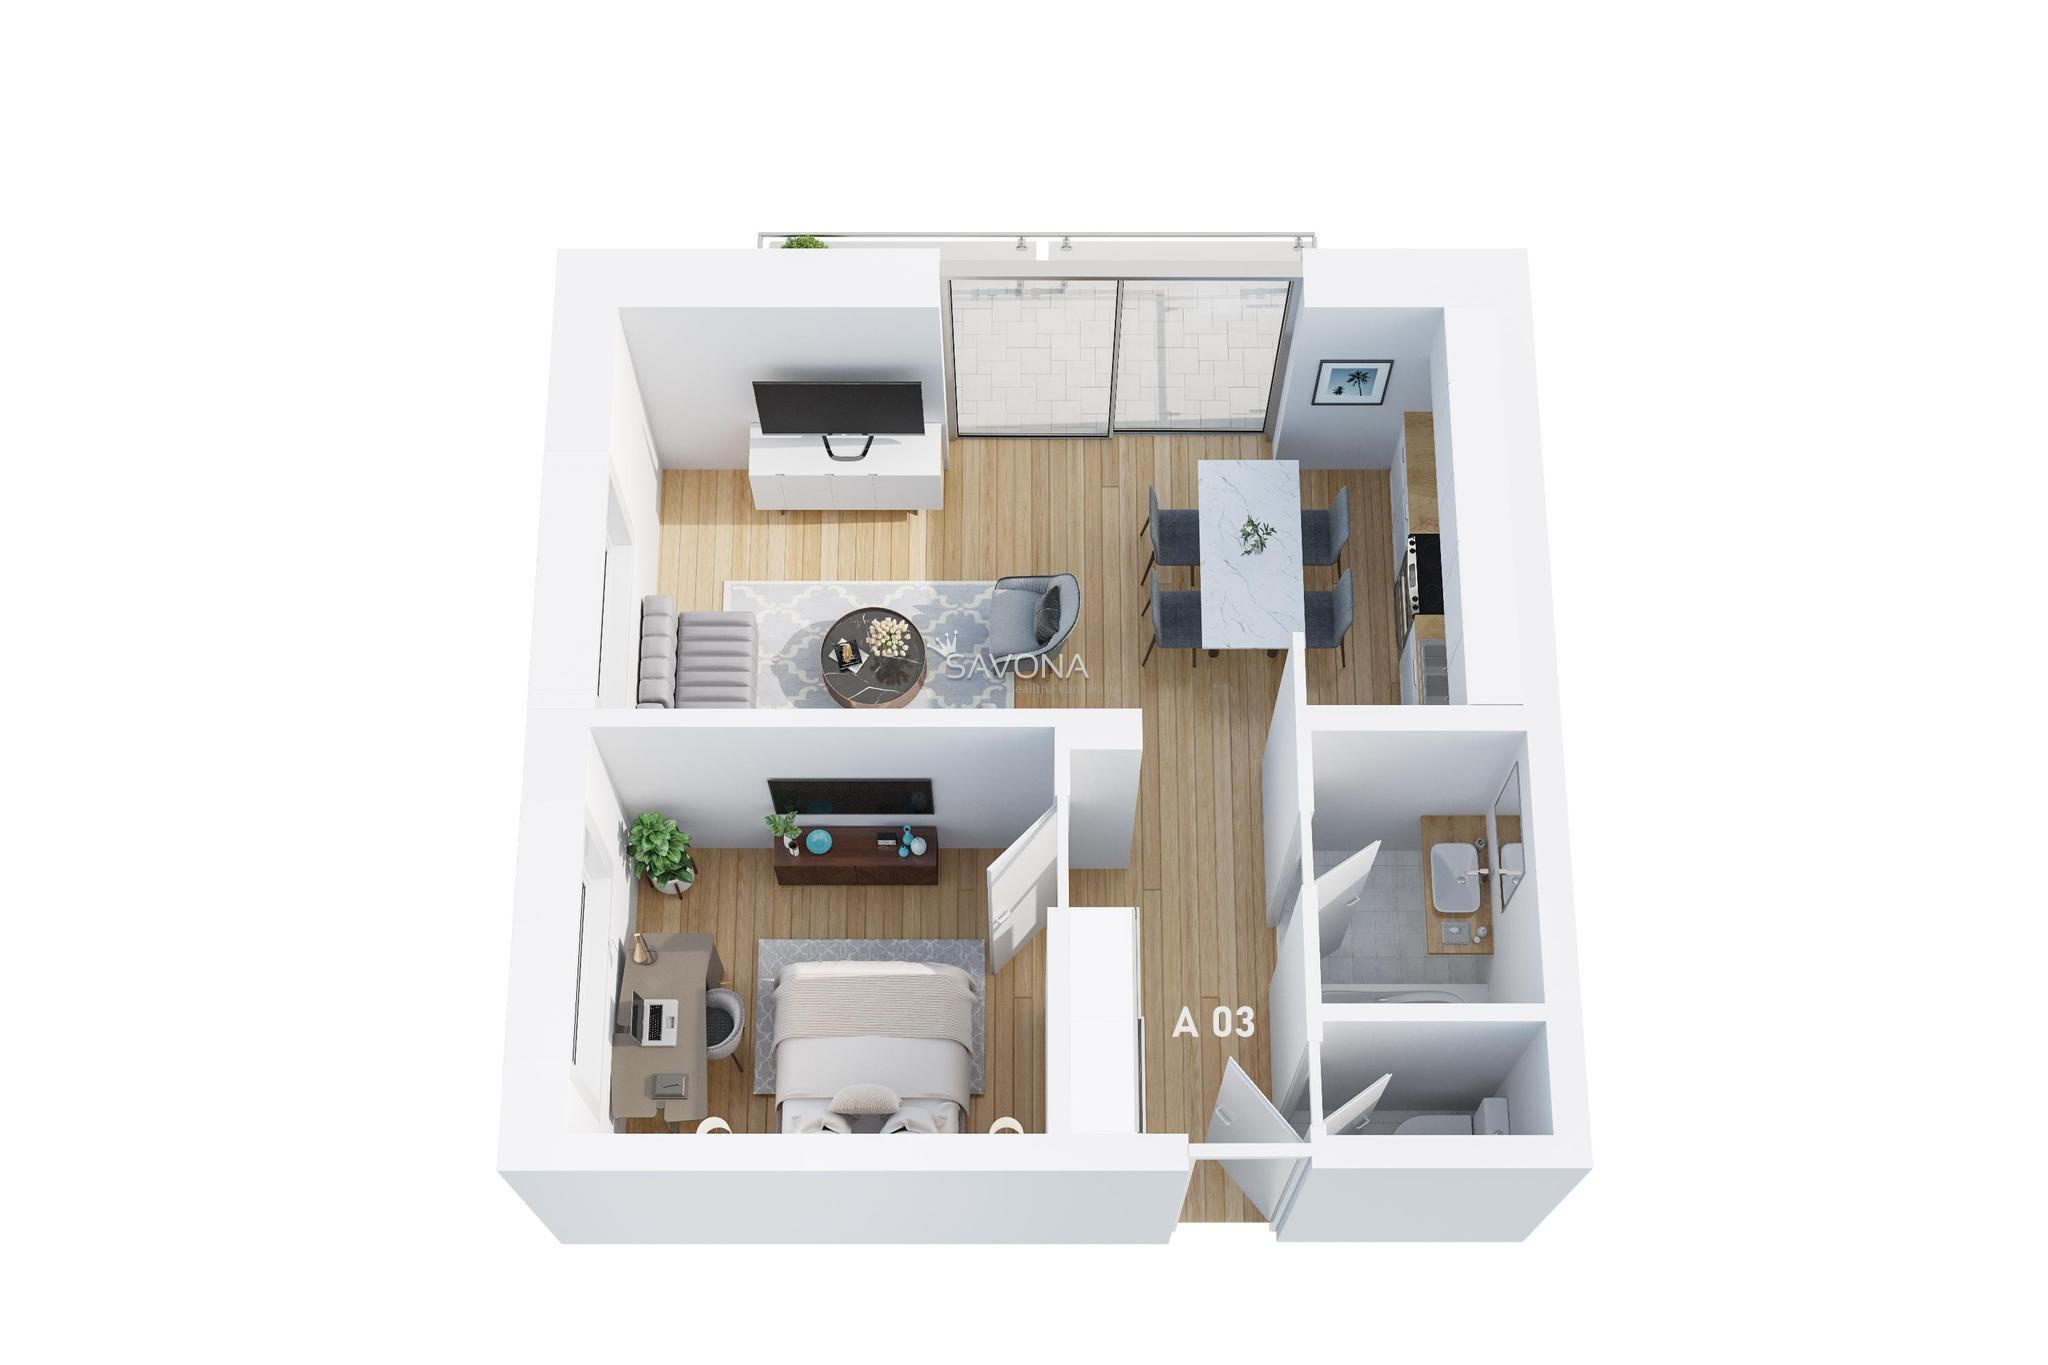 PREDANÝ | LUNA RESIDENCE | 2 izbový A 03 - 62 m2, s výhľadom na TATRY